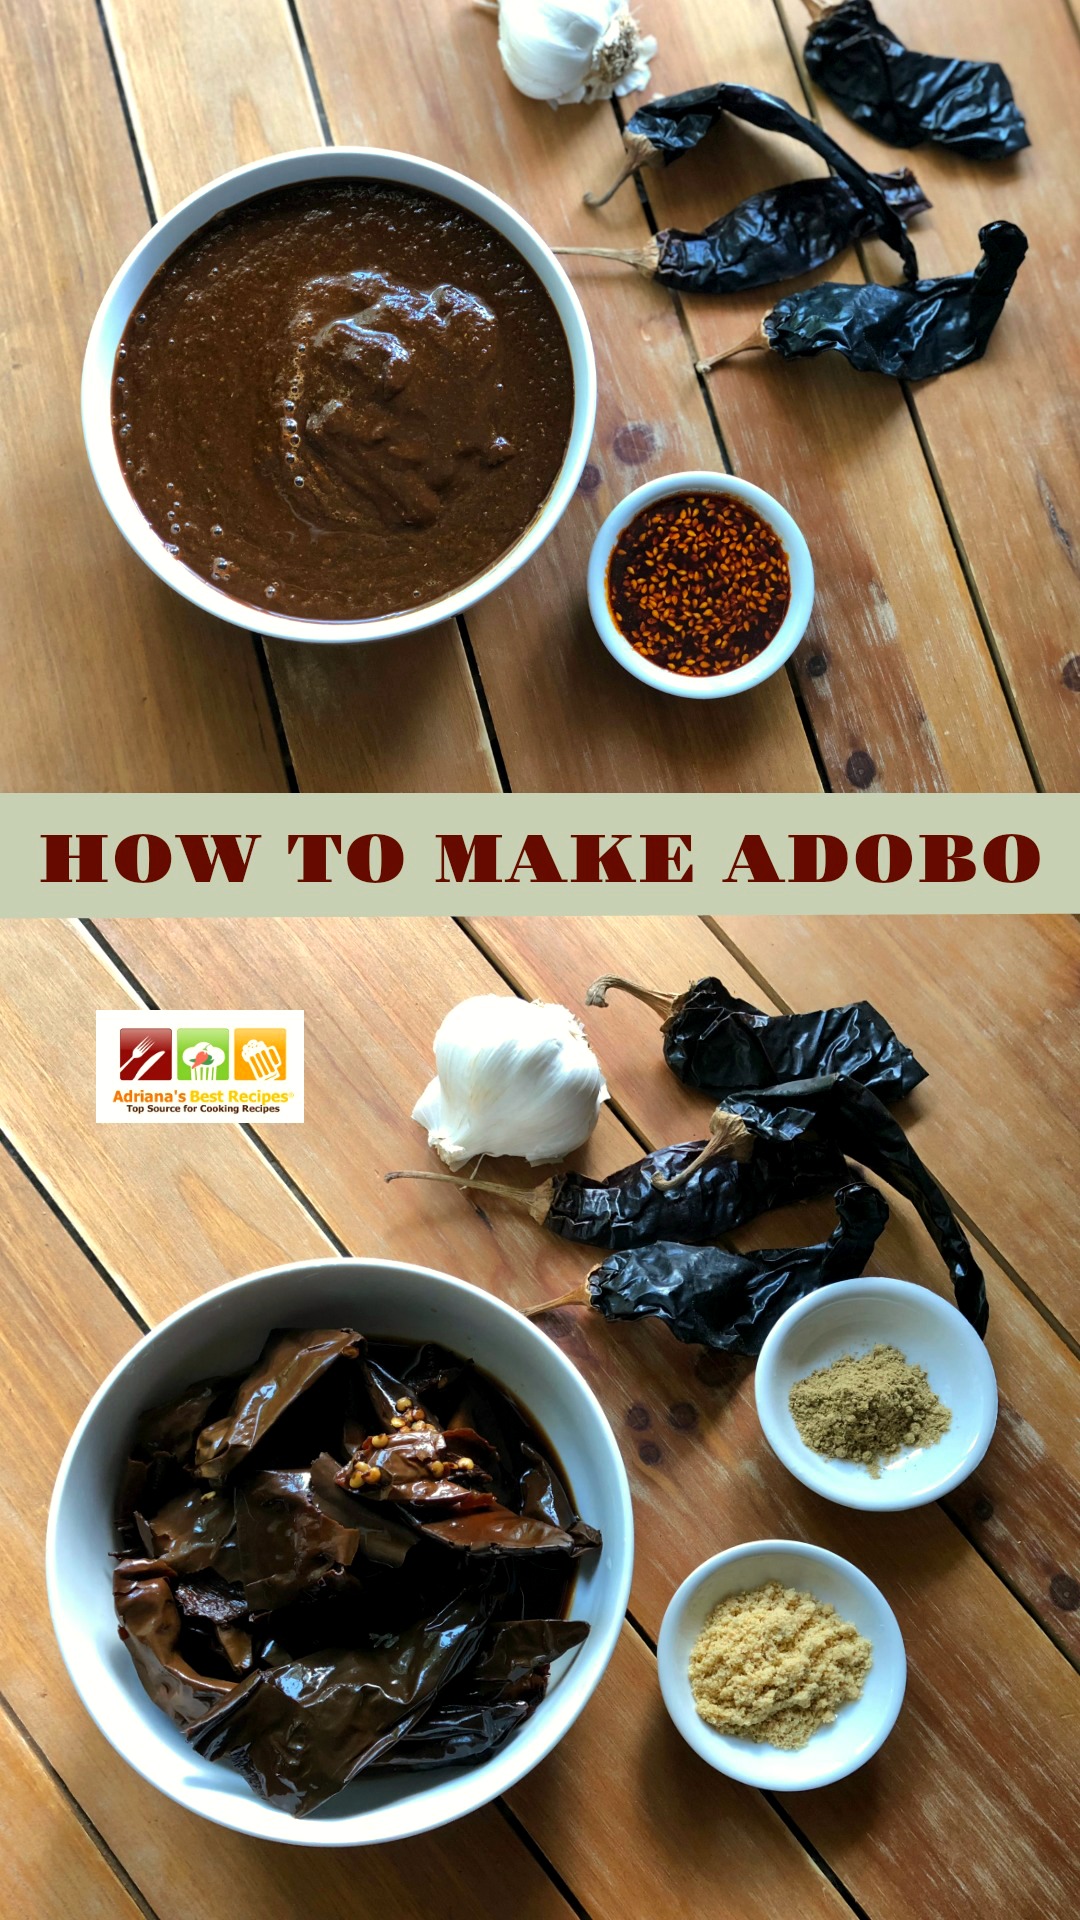 How to make adobo